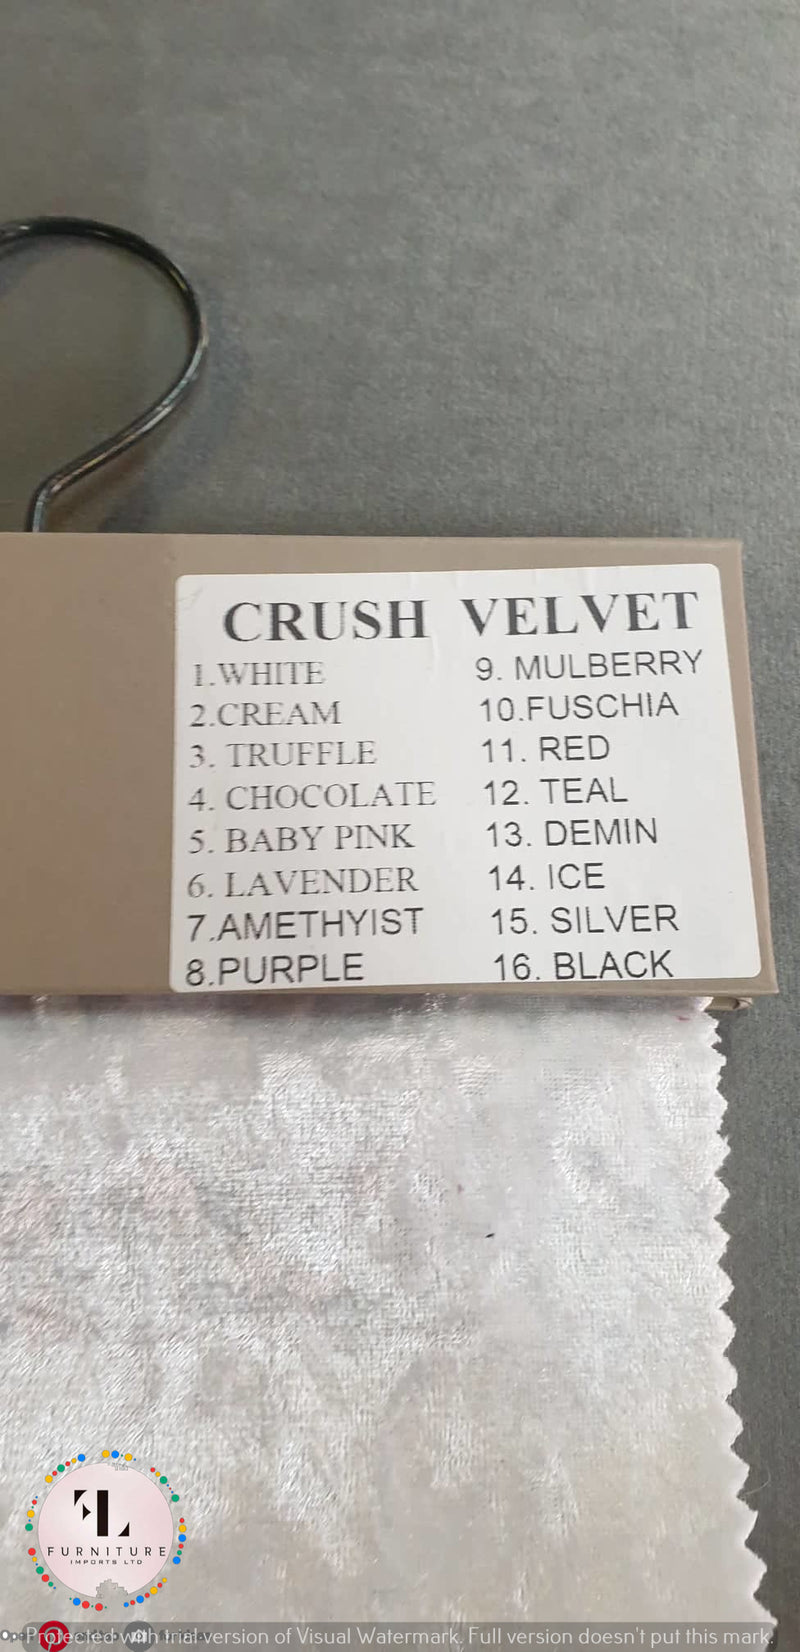 BEDFRAME SAMPLE - Crushed Velvet Bed Samples